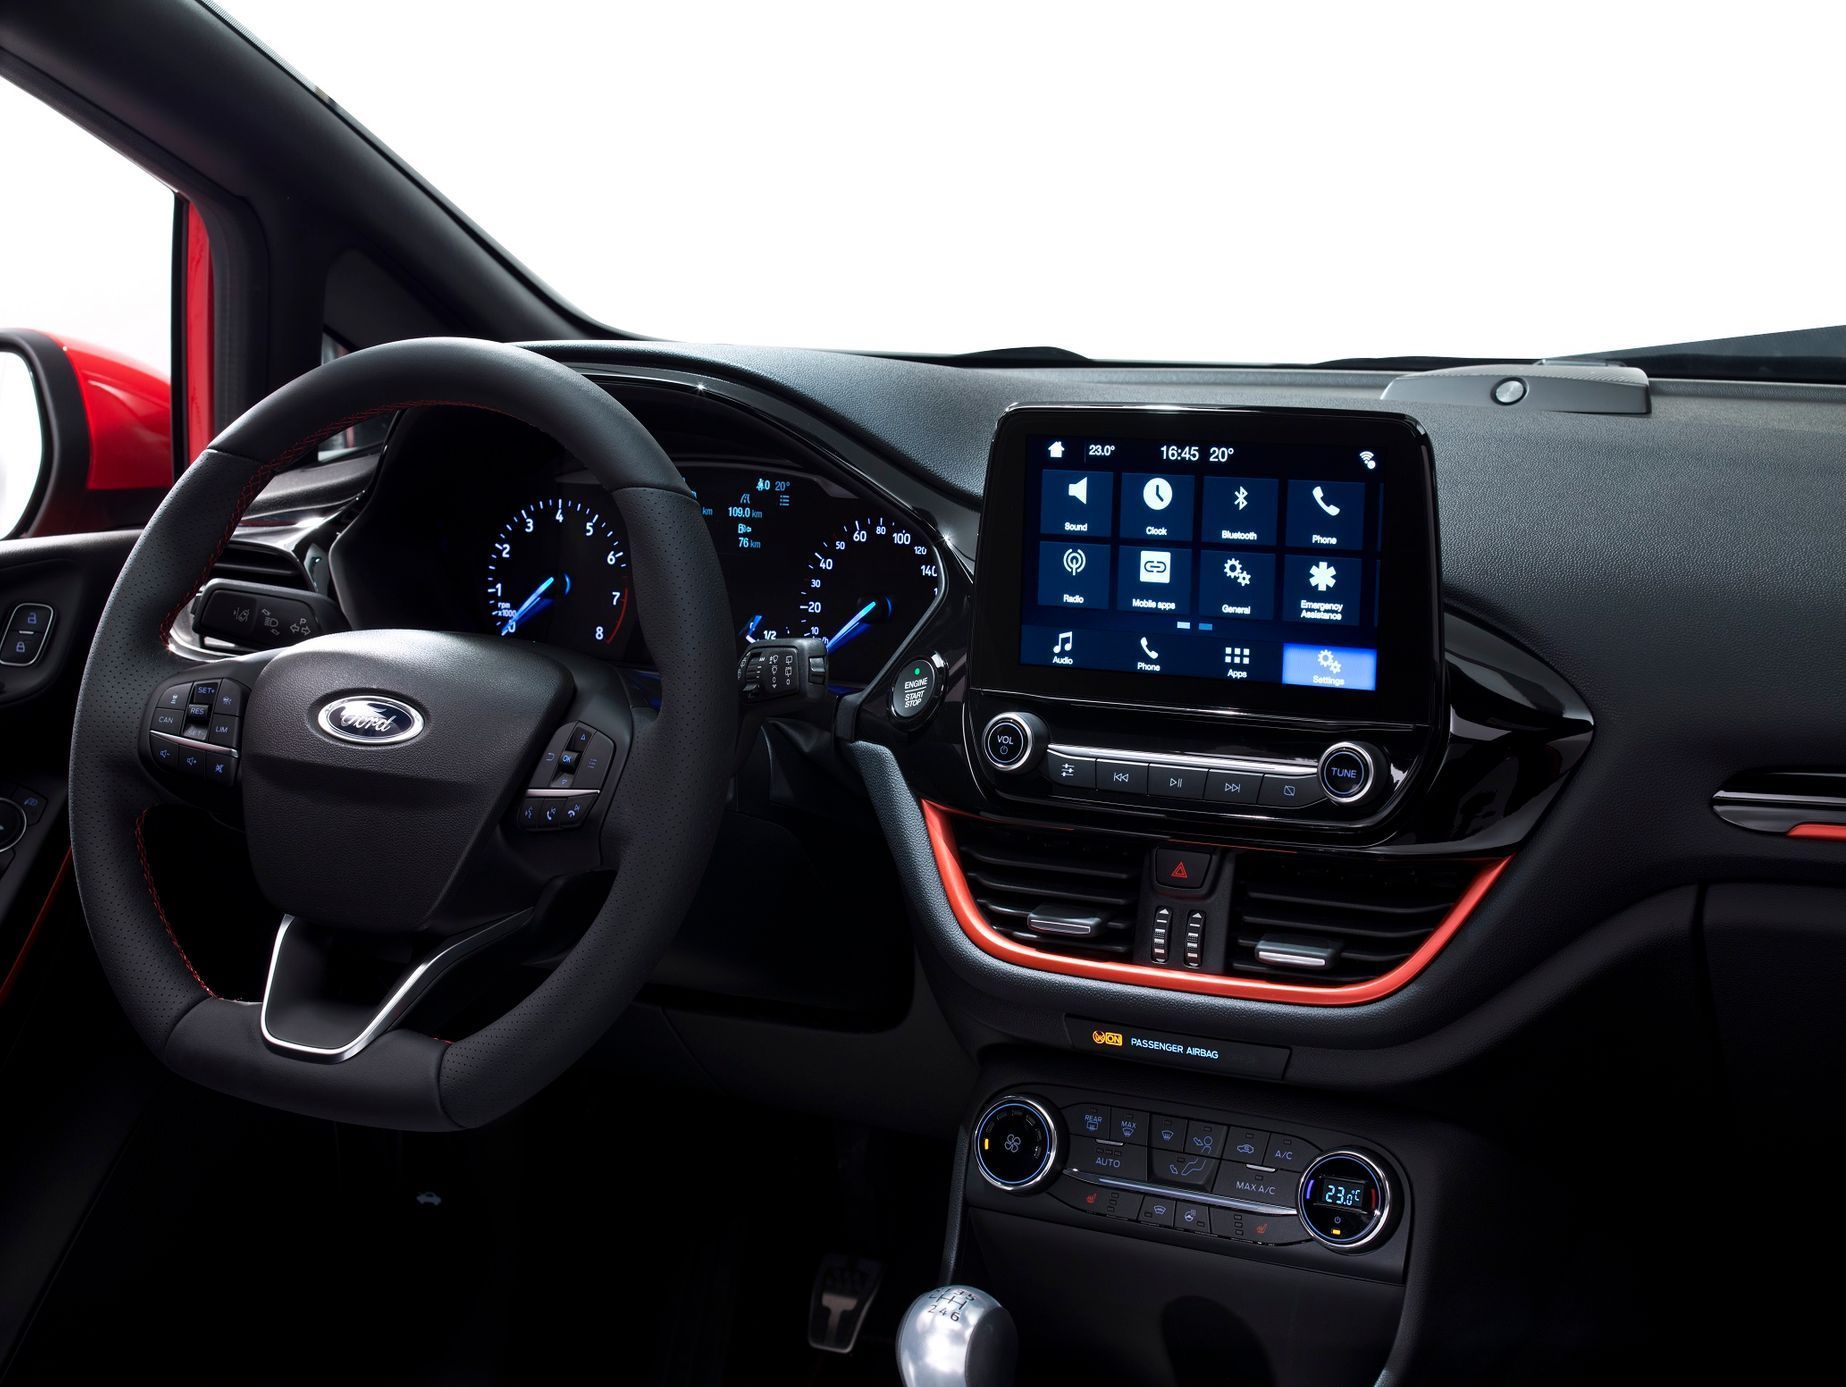 Ford Fiesta 2017 - 8 ST-Line přístrojovka